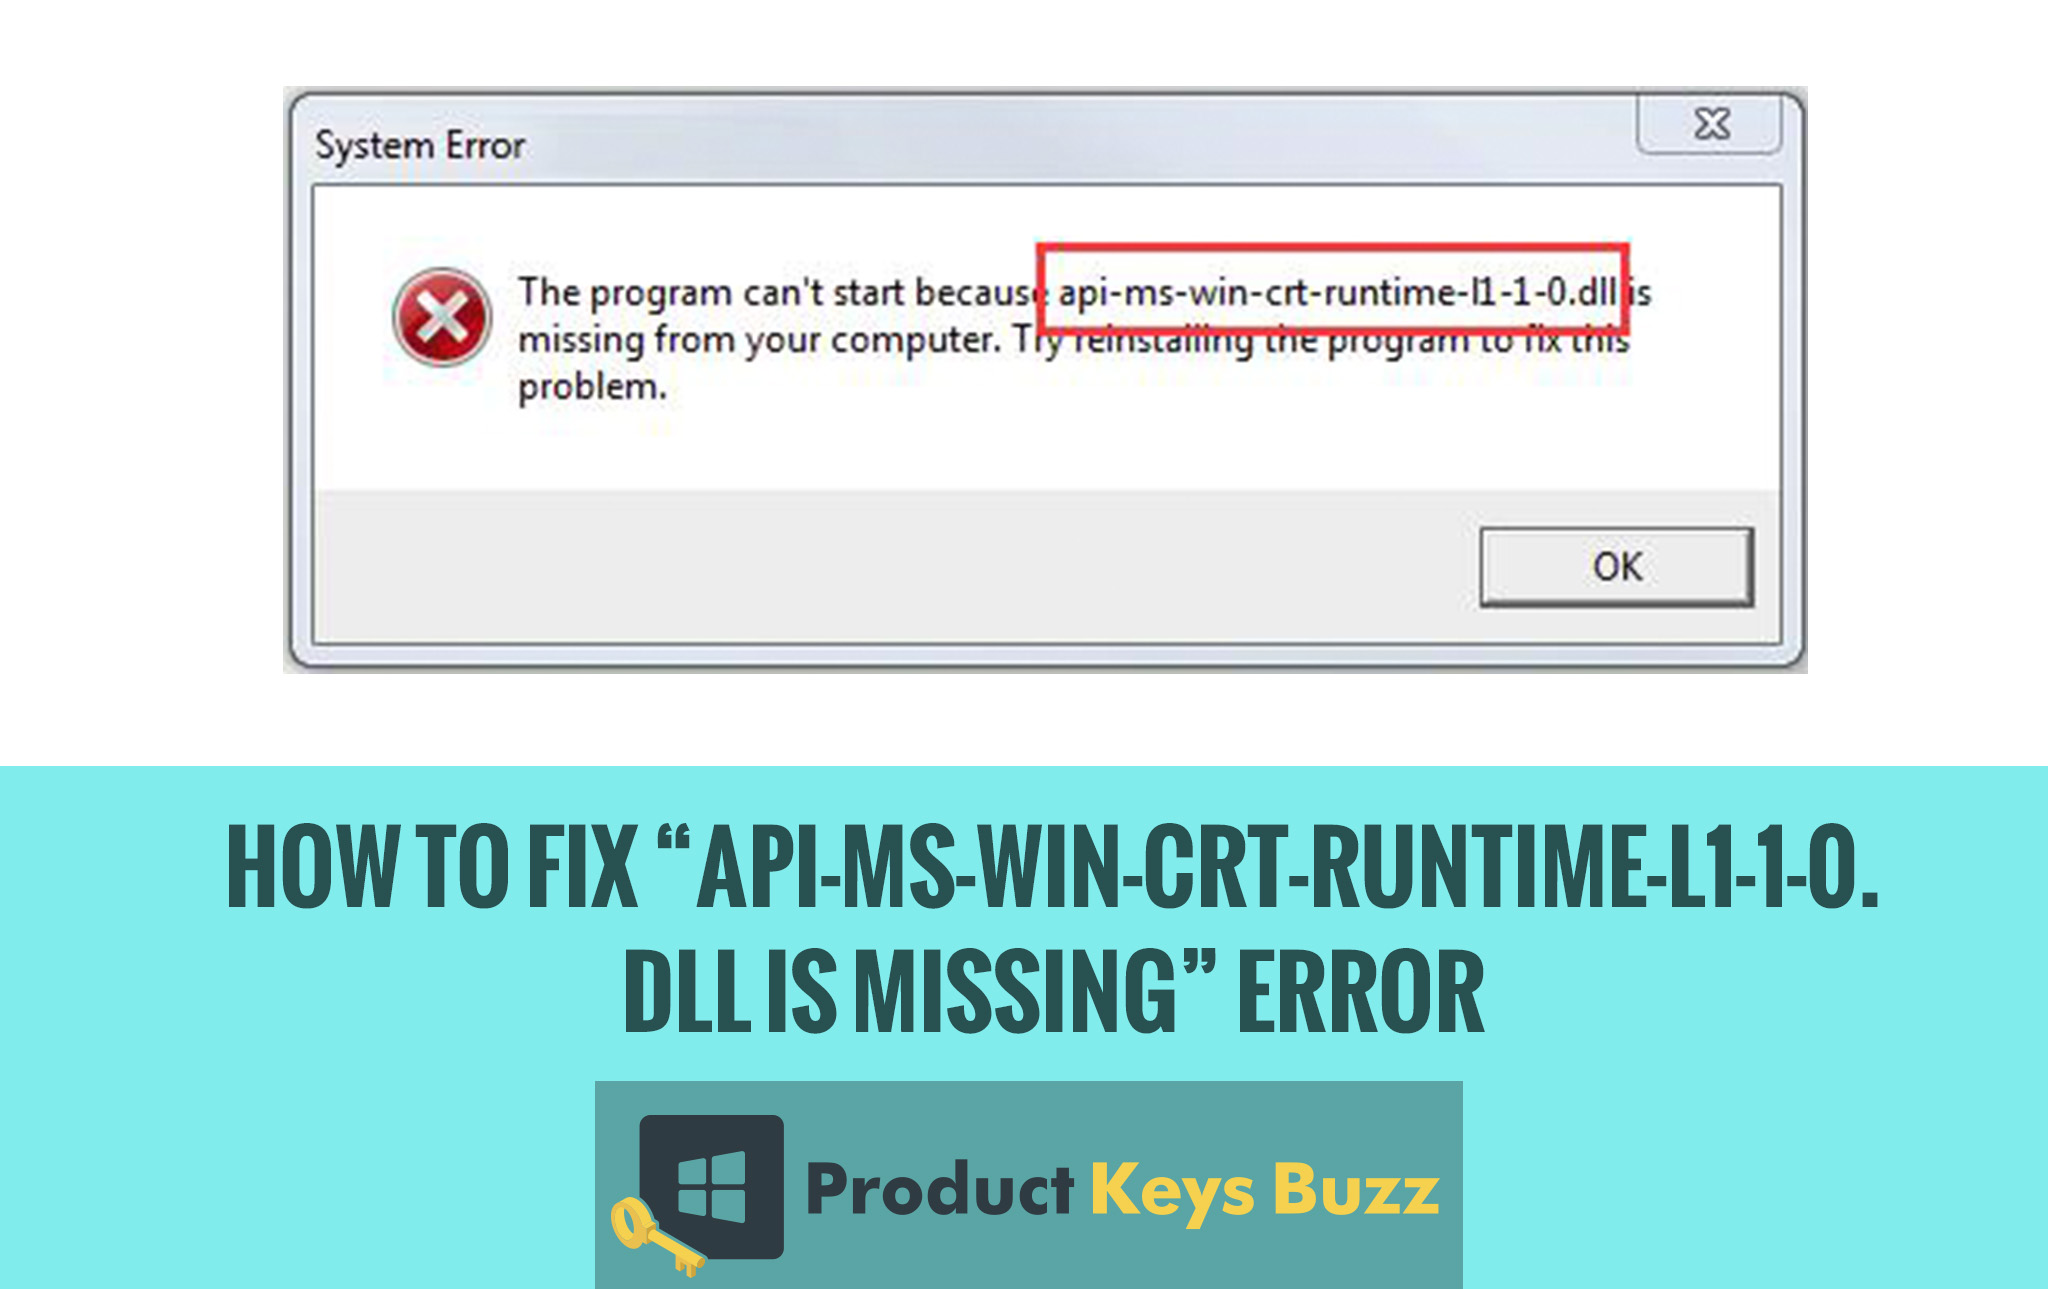 Api ms win crt runtime l1 1 0 dll erro How To Fix Api Ms Win Crt Runtime L1 1 0 Dll Is Missing Error